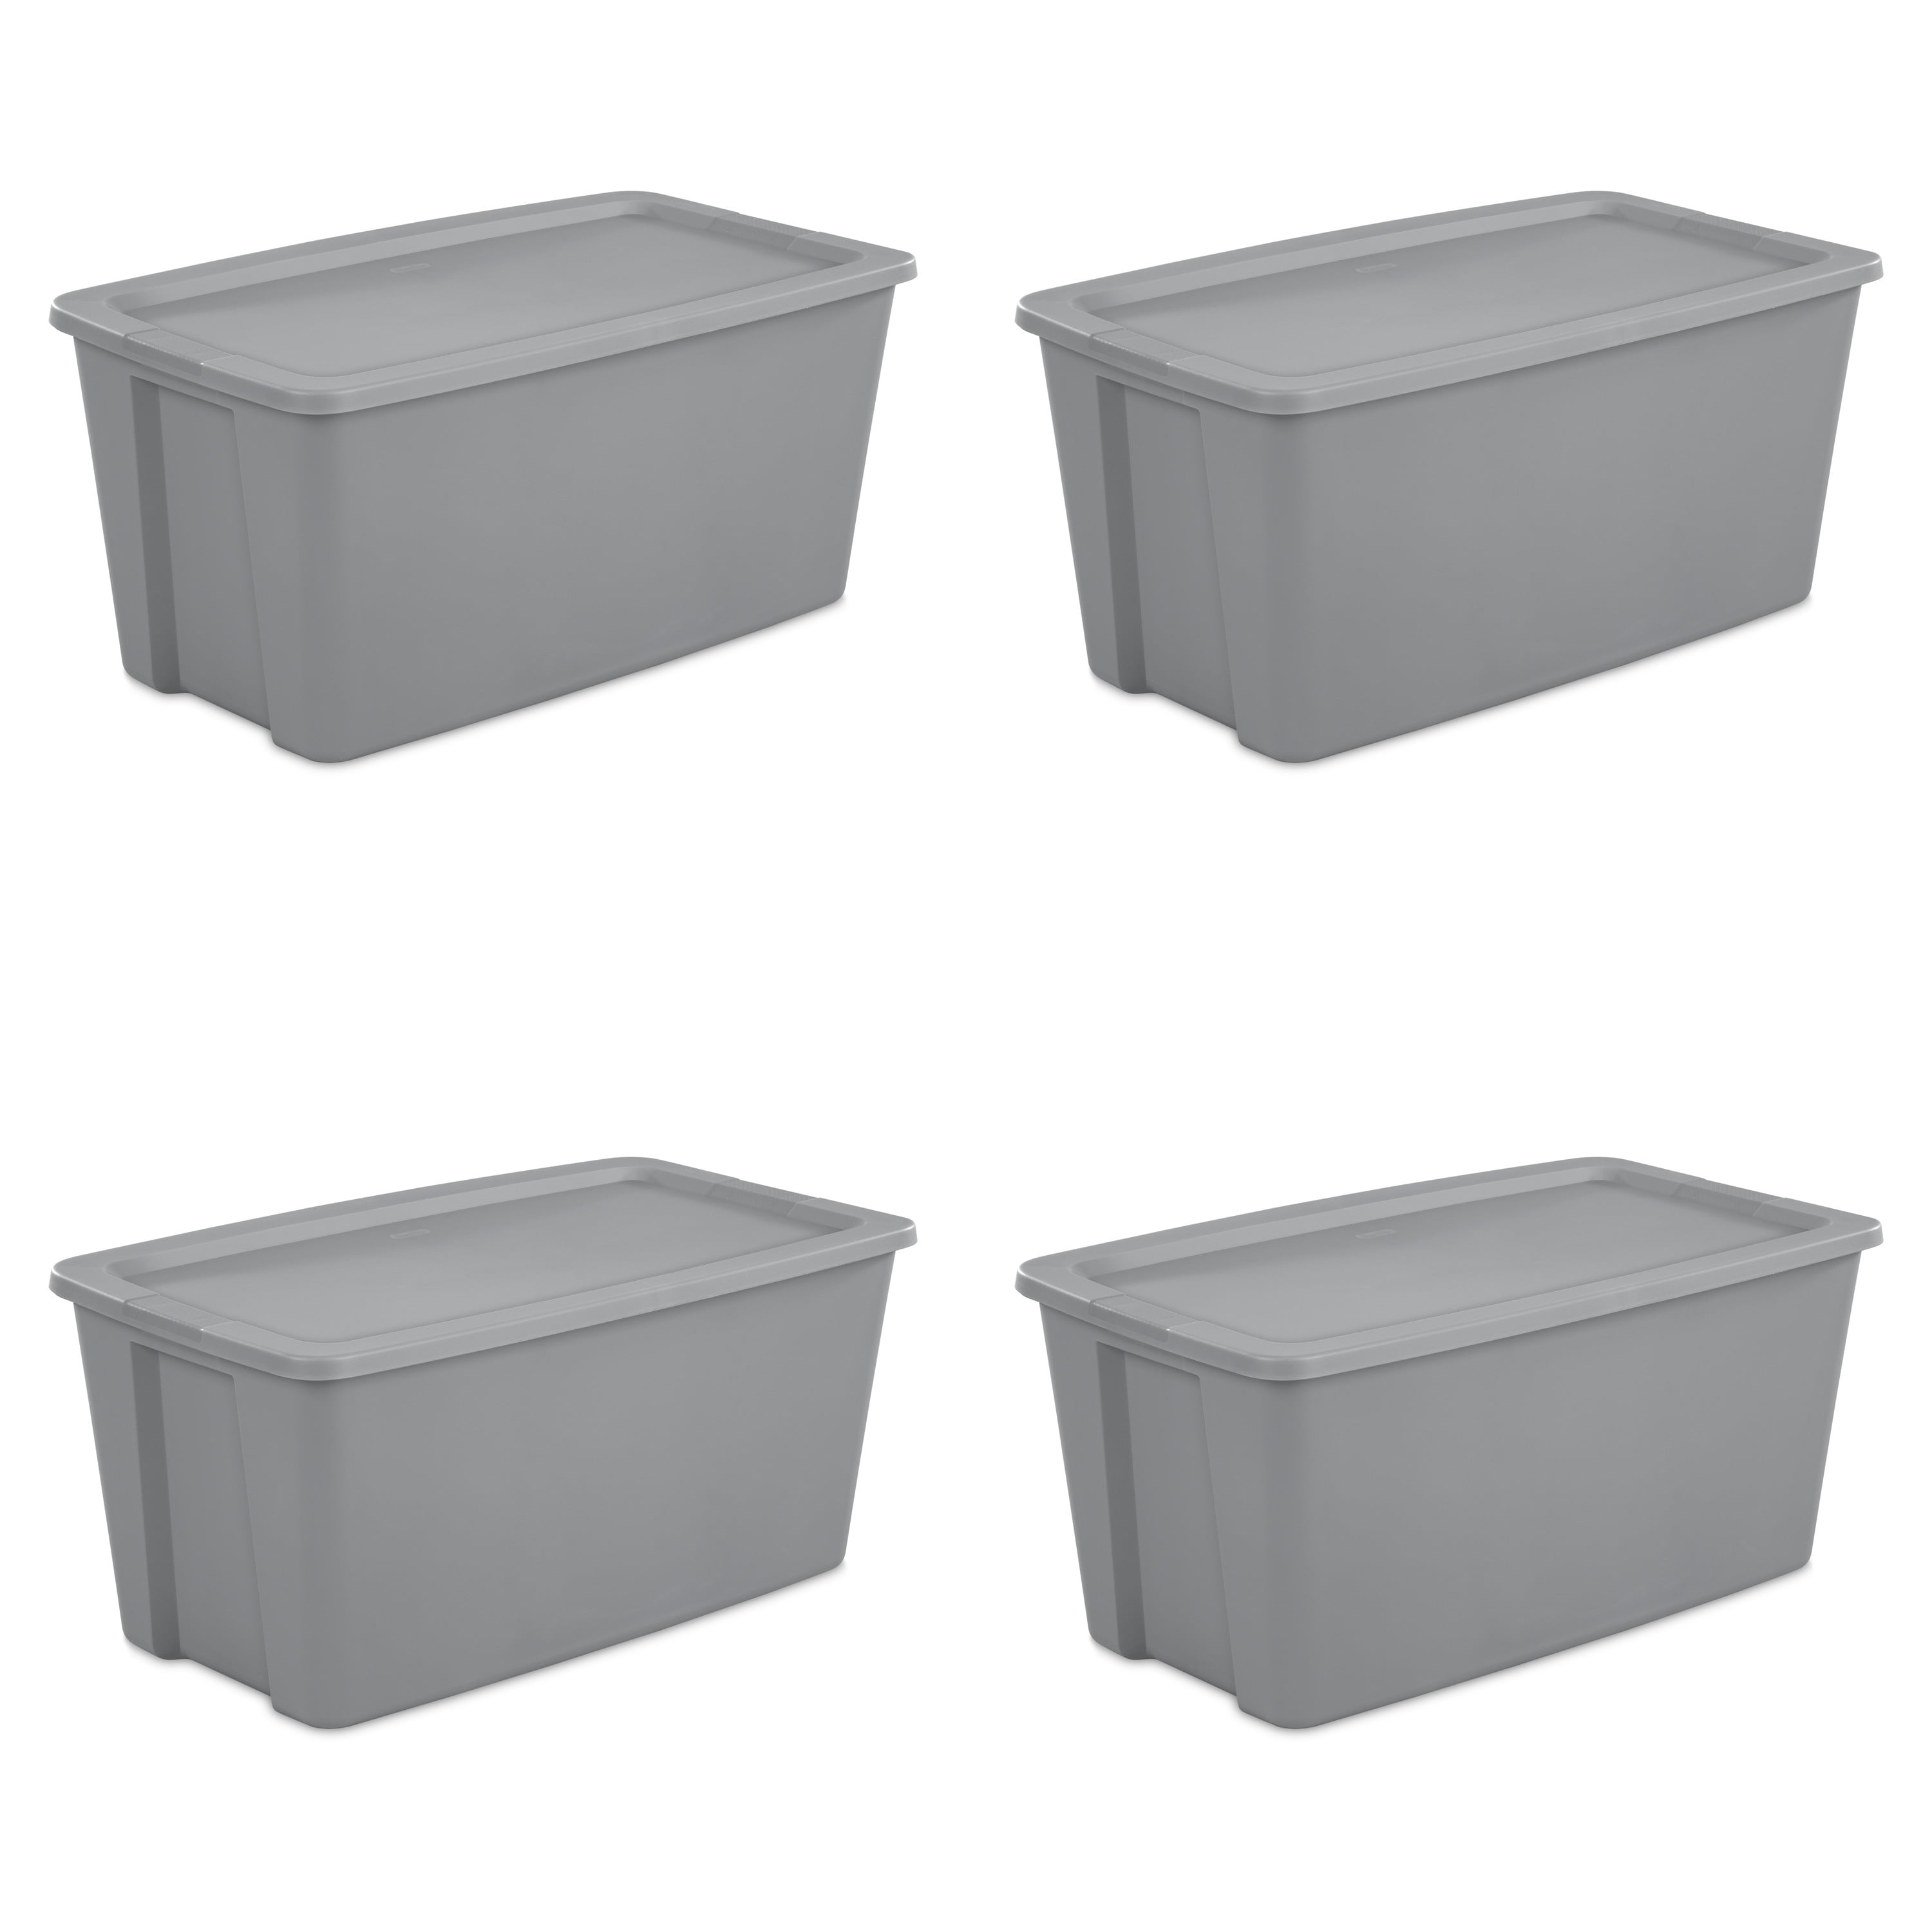 30 Gallon Tote Box Plastic, Titanium, Storage Containers - Set of 2